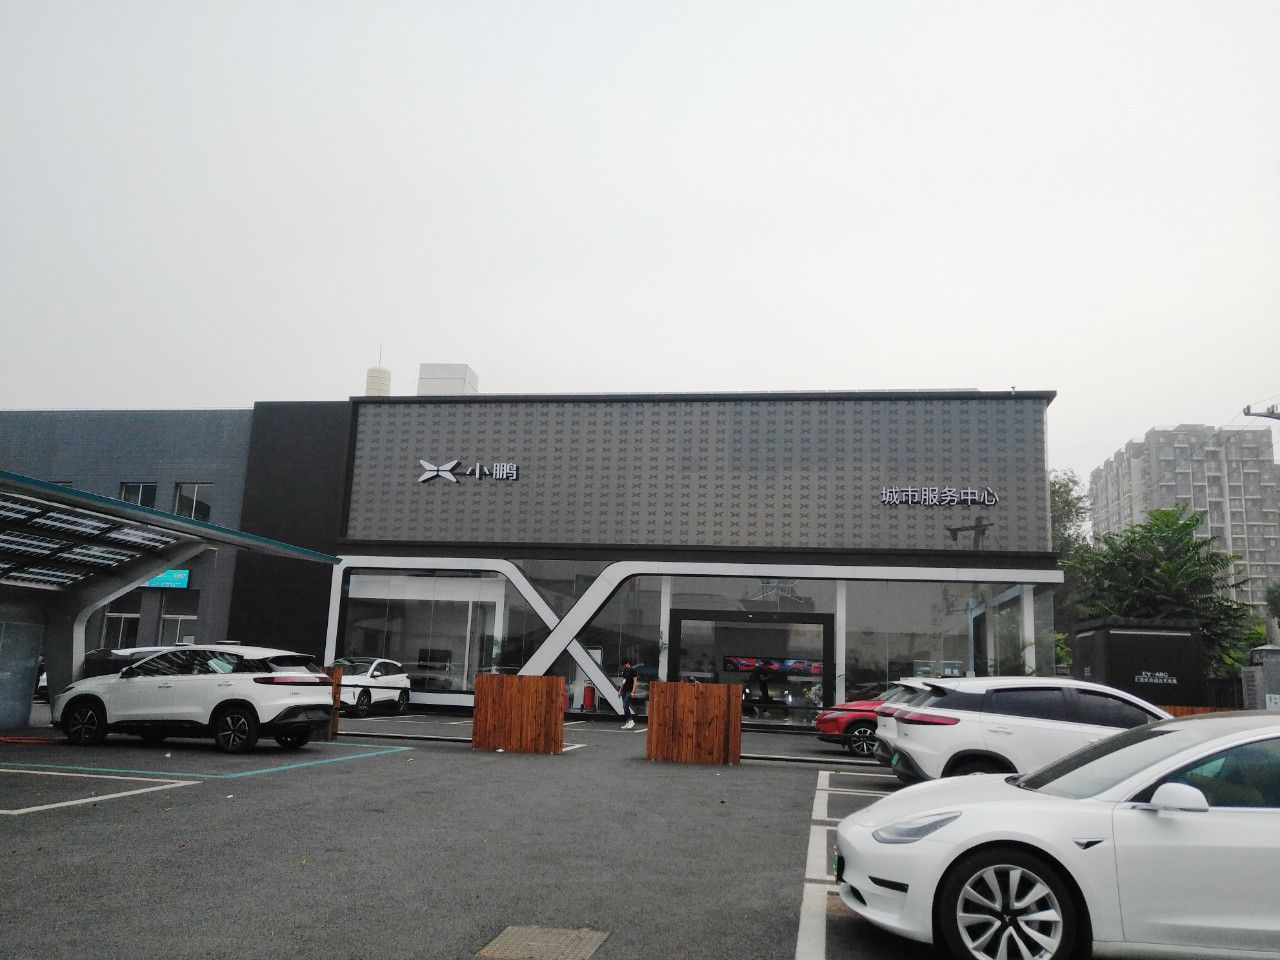 小鹏汽车曾表示,小鹏汽车线下店面的特色是价格统一透明和客户体验